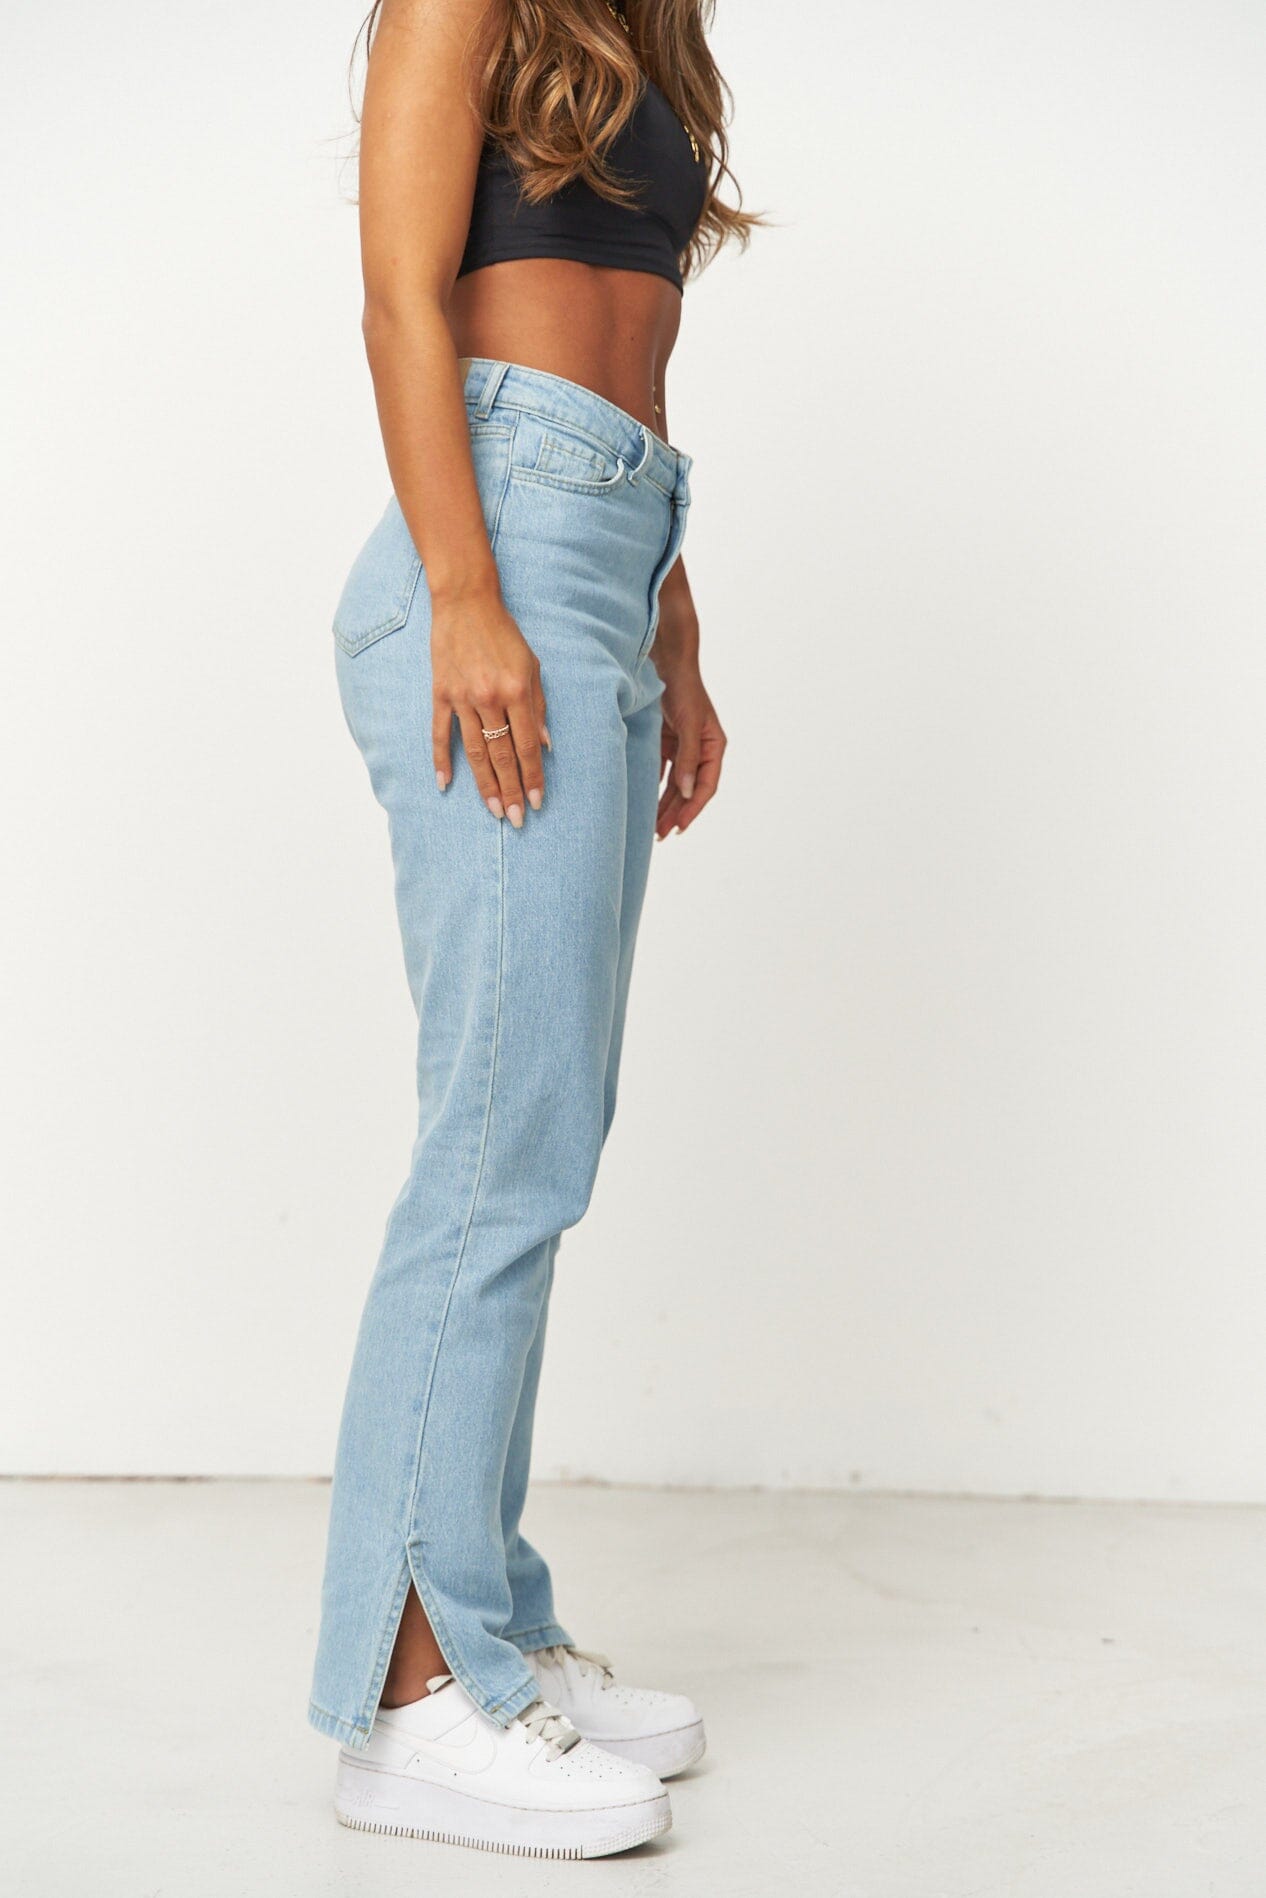 Hellblaue Jeans für Frauen mit einem geraden Schnitt. Hellblaue Denim Jeans für Damen